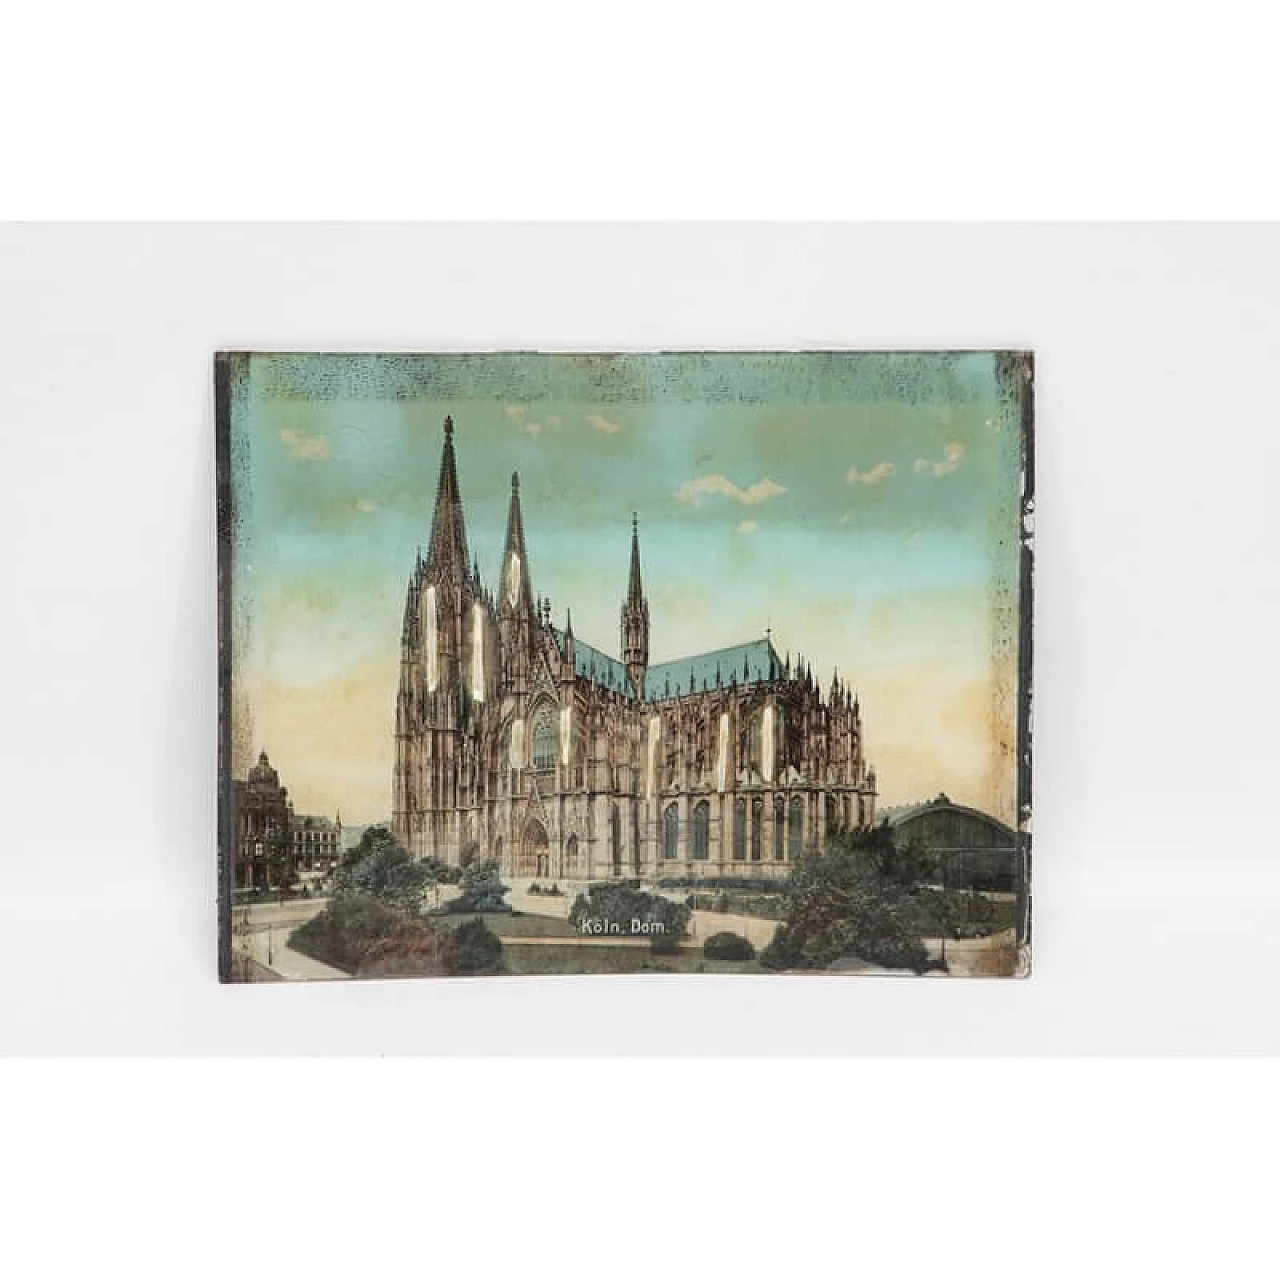 Stampa di veduta di cattedrale su vetro bombato con inserti in madreperla, '800 1470138